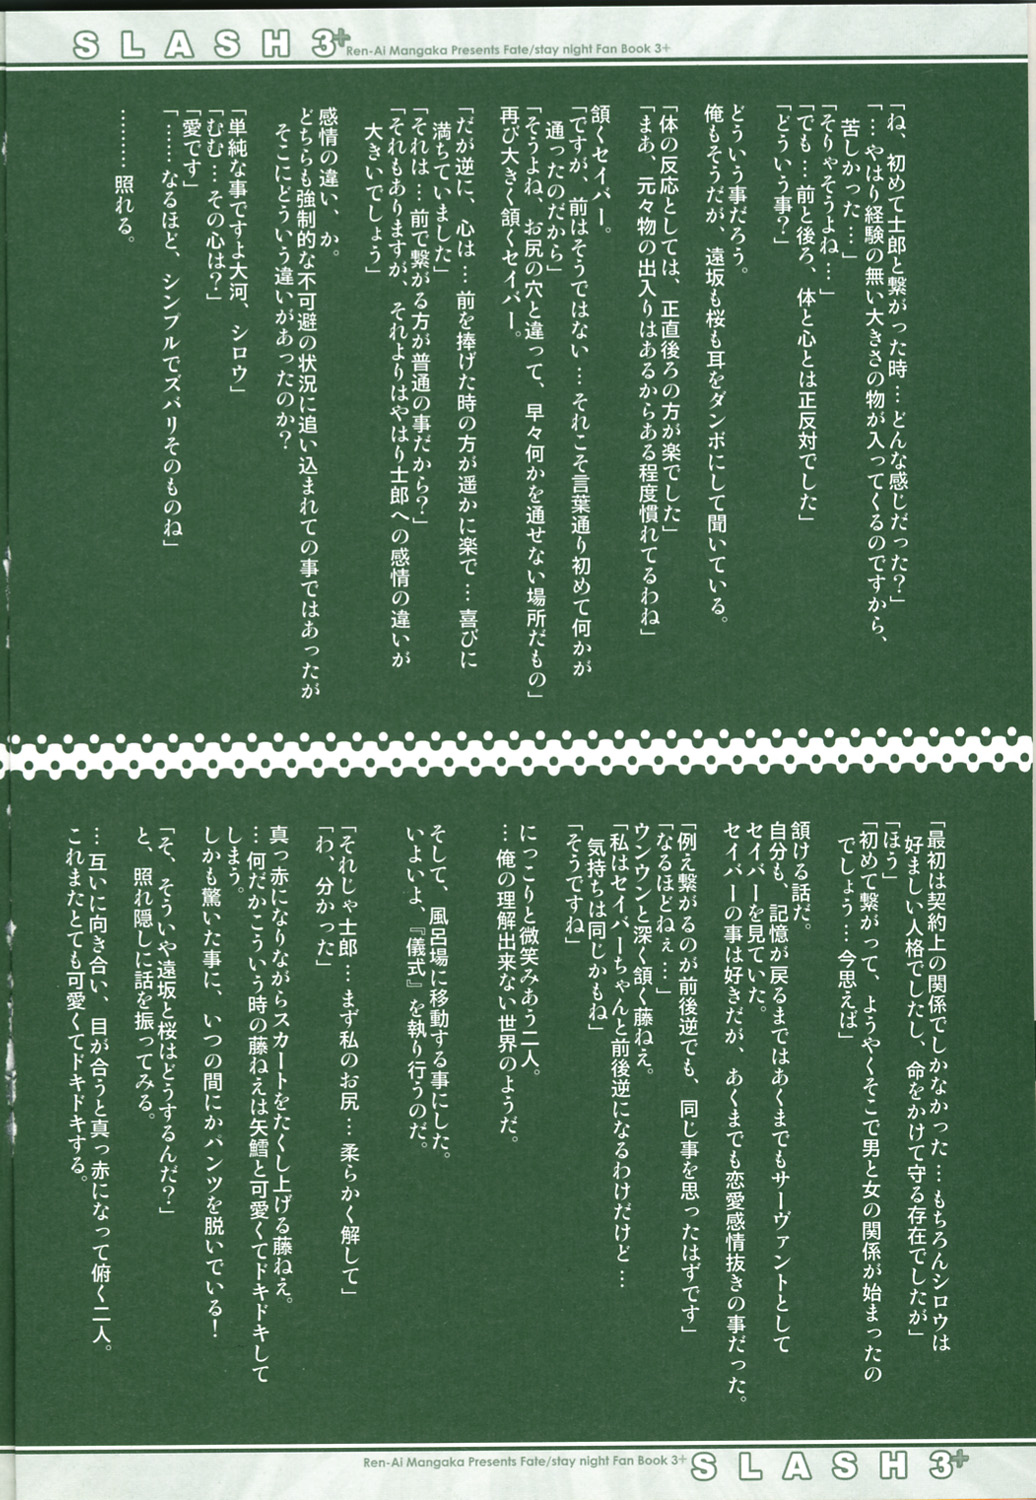 (CR36) [Renai Mangaka (Naruse Hirofume)] SLASH 3 + (Fate/stay night) page 10 full